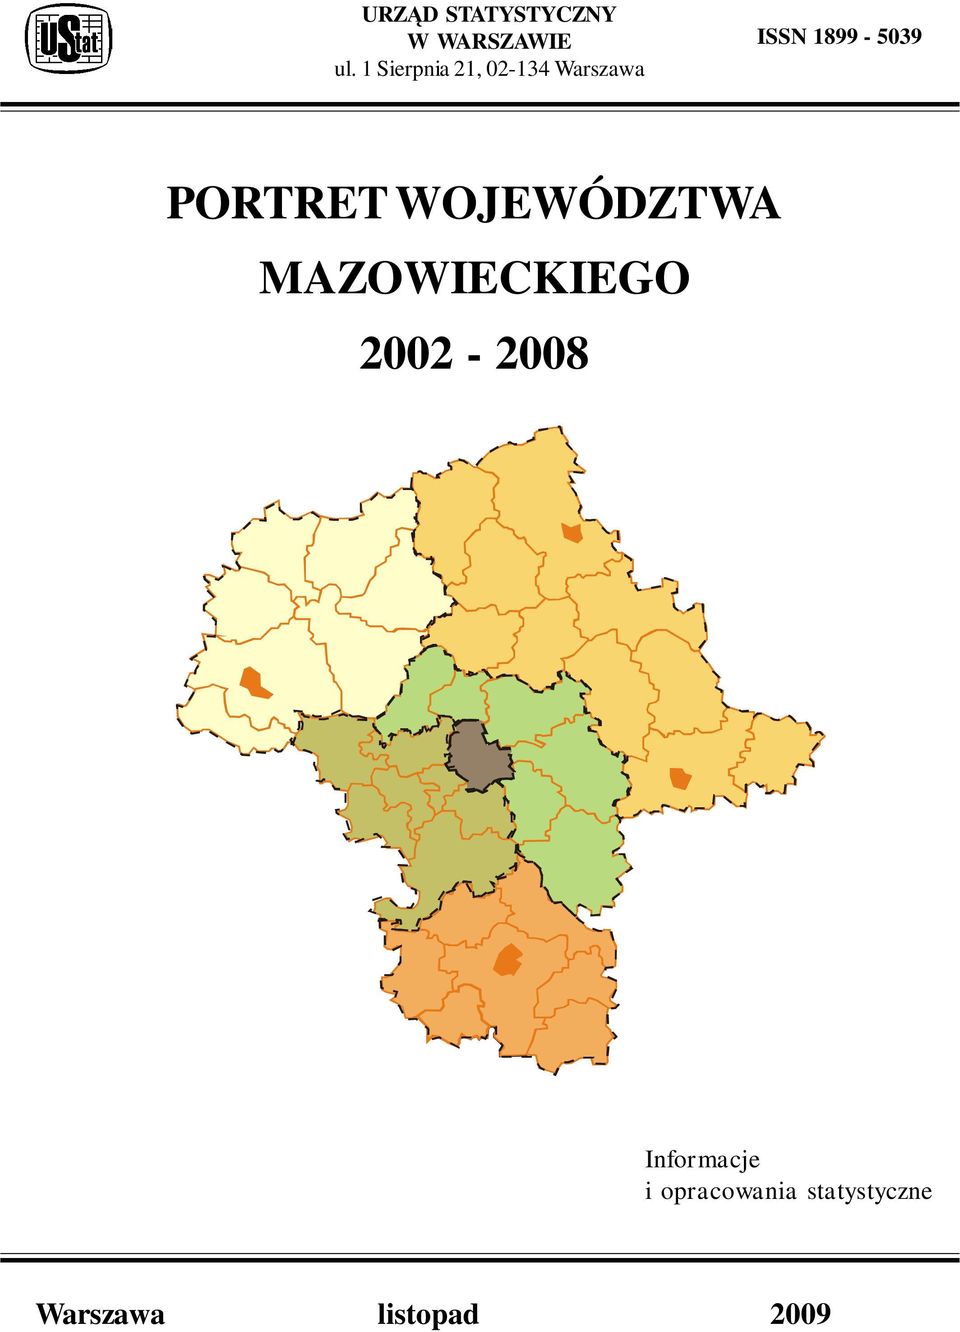 PORTRET WOJEWÓDZTWA MAZOWIECKIEGO 2002-2008